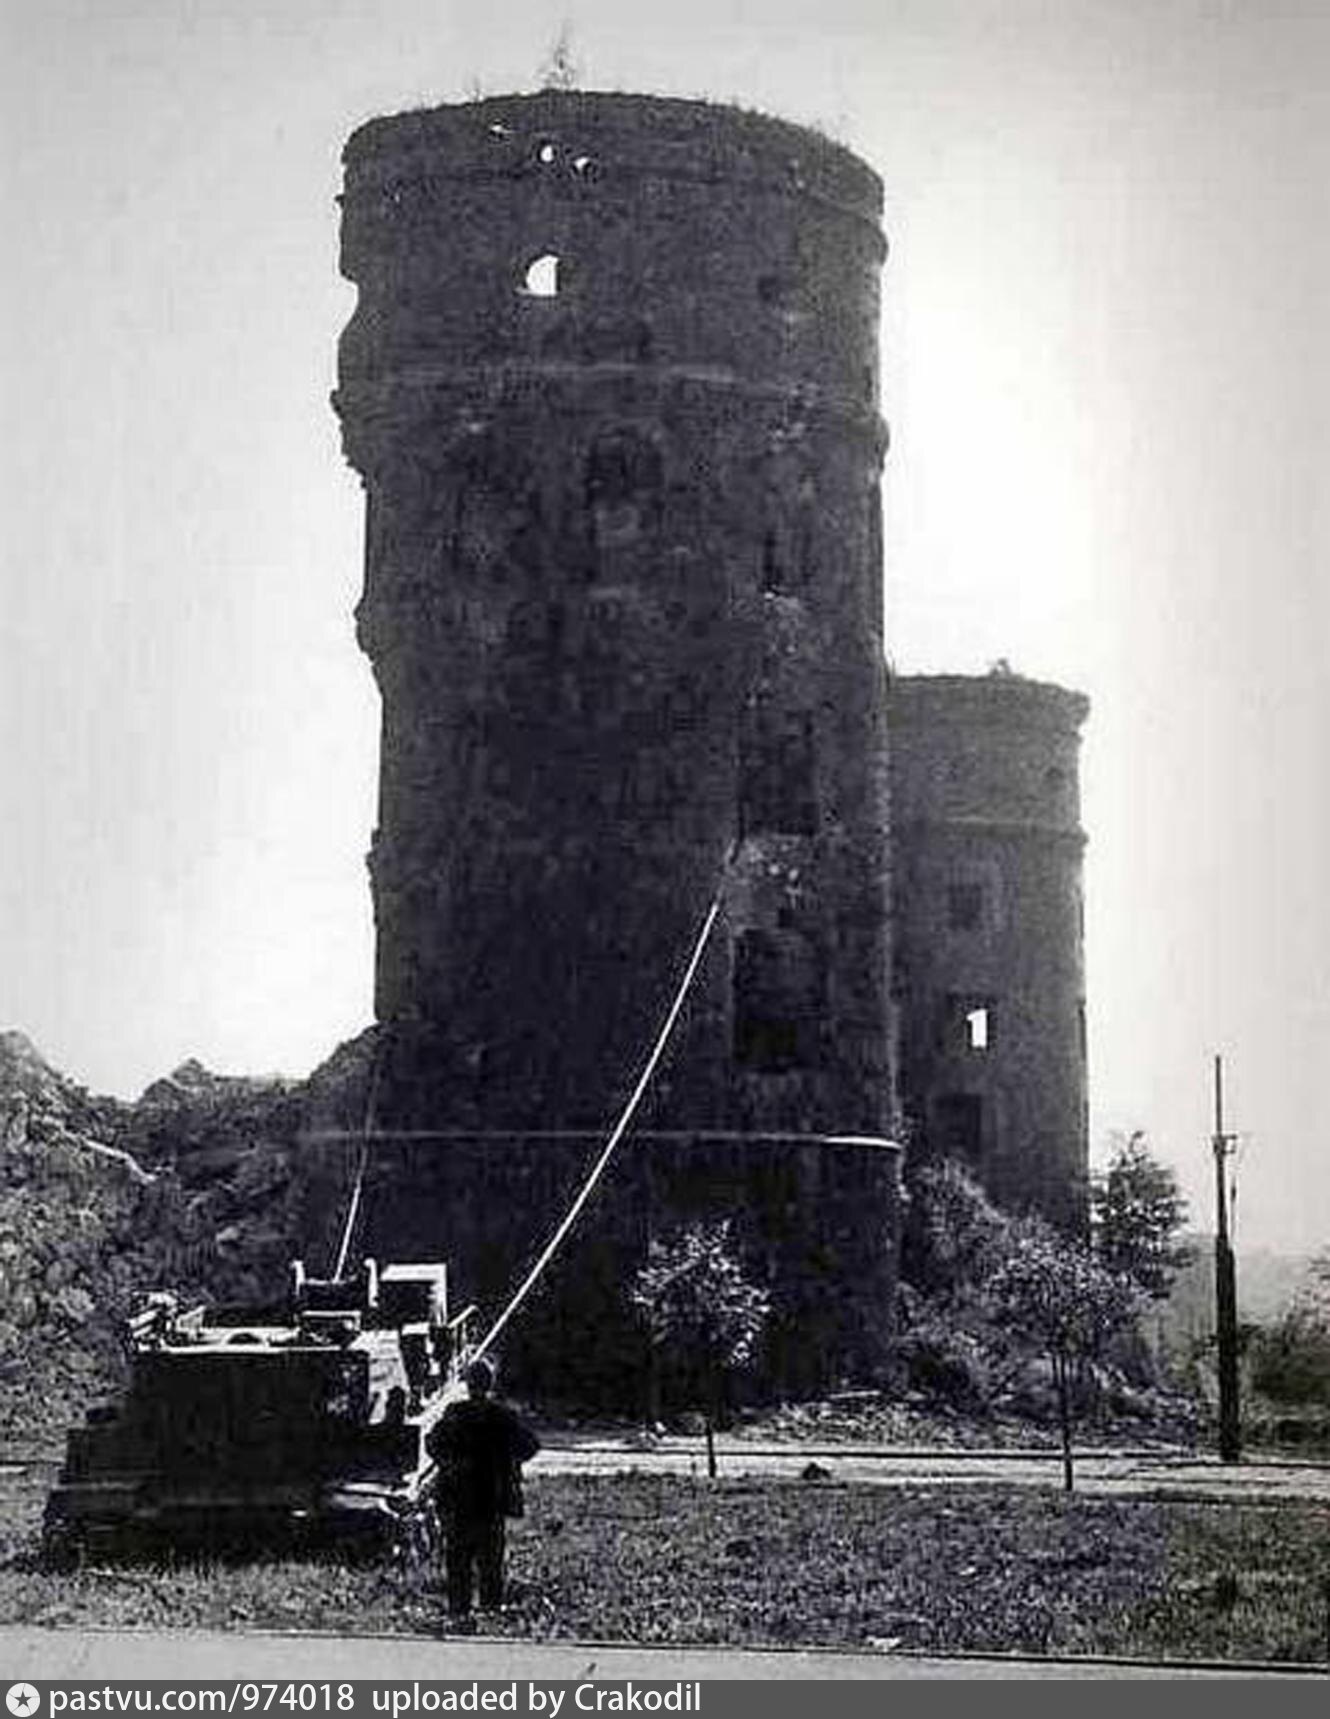 королевский замок калининград после войны фото